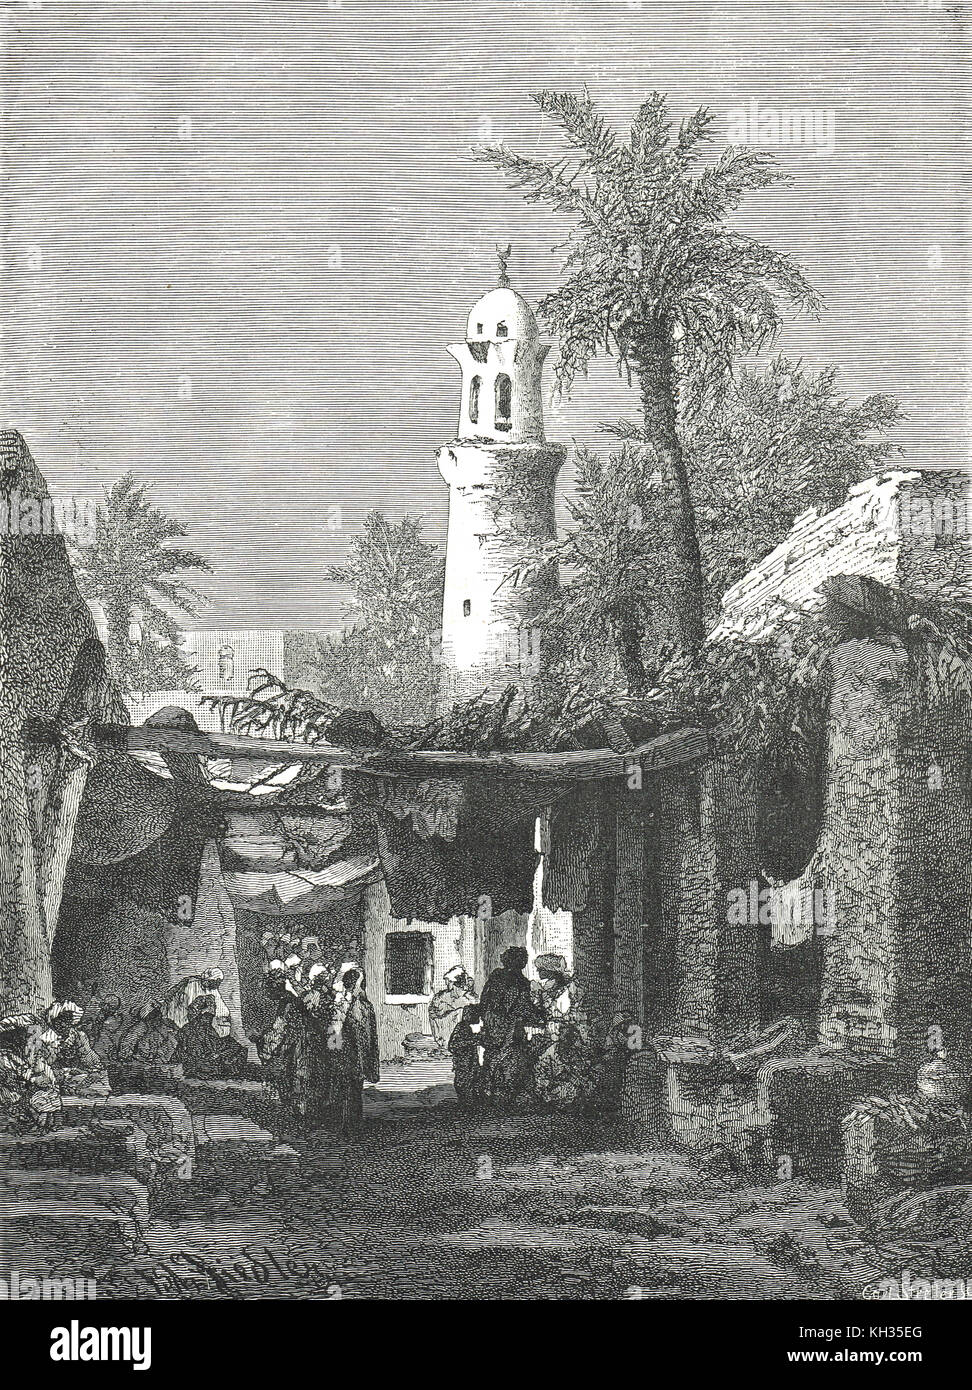 Bazaar in Aswan, Egypt, 19th century Stock Photo